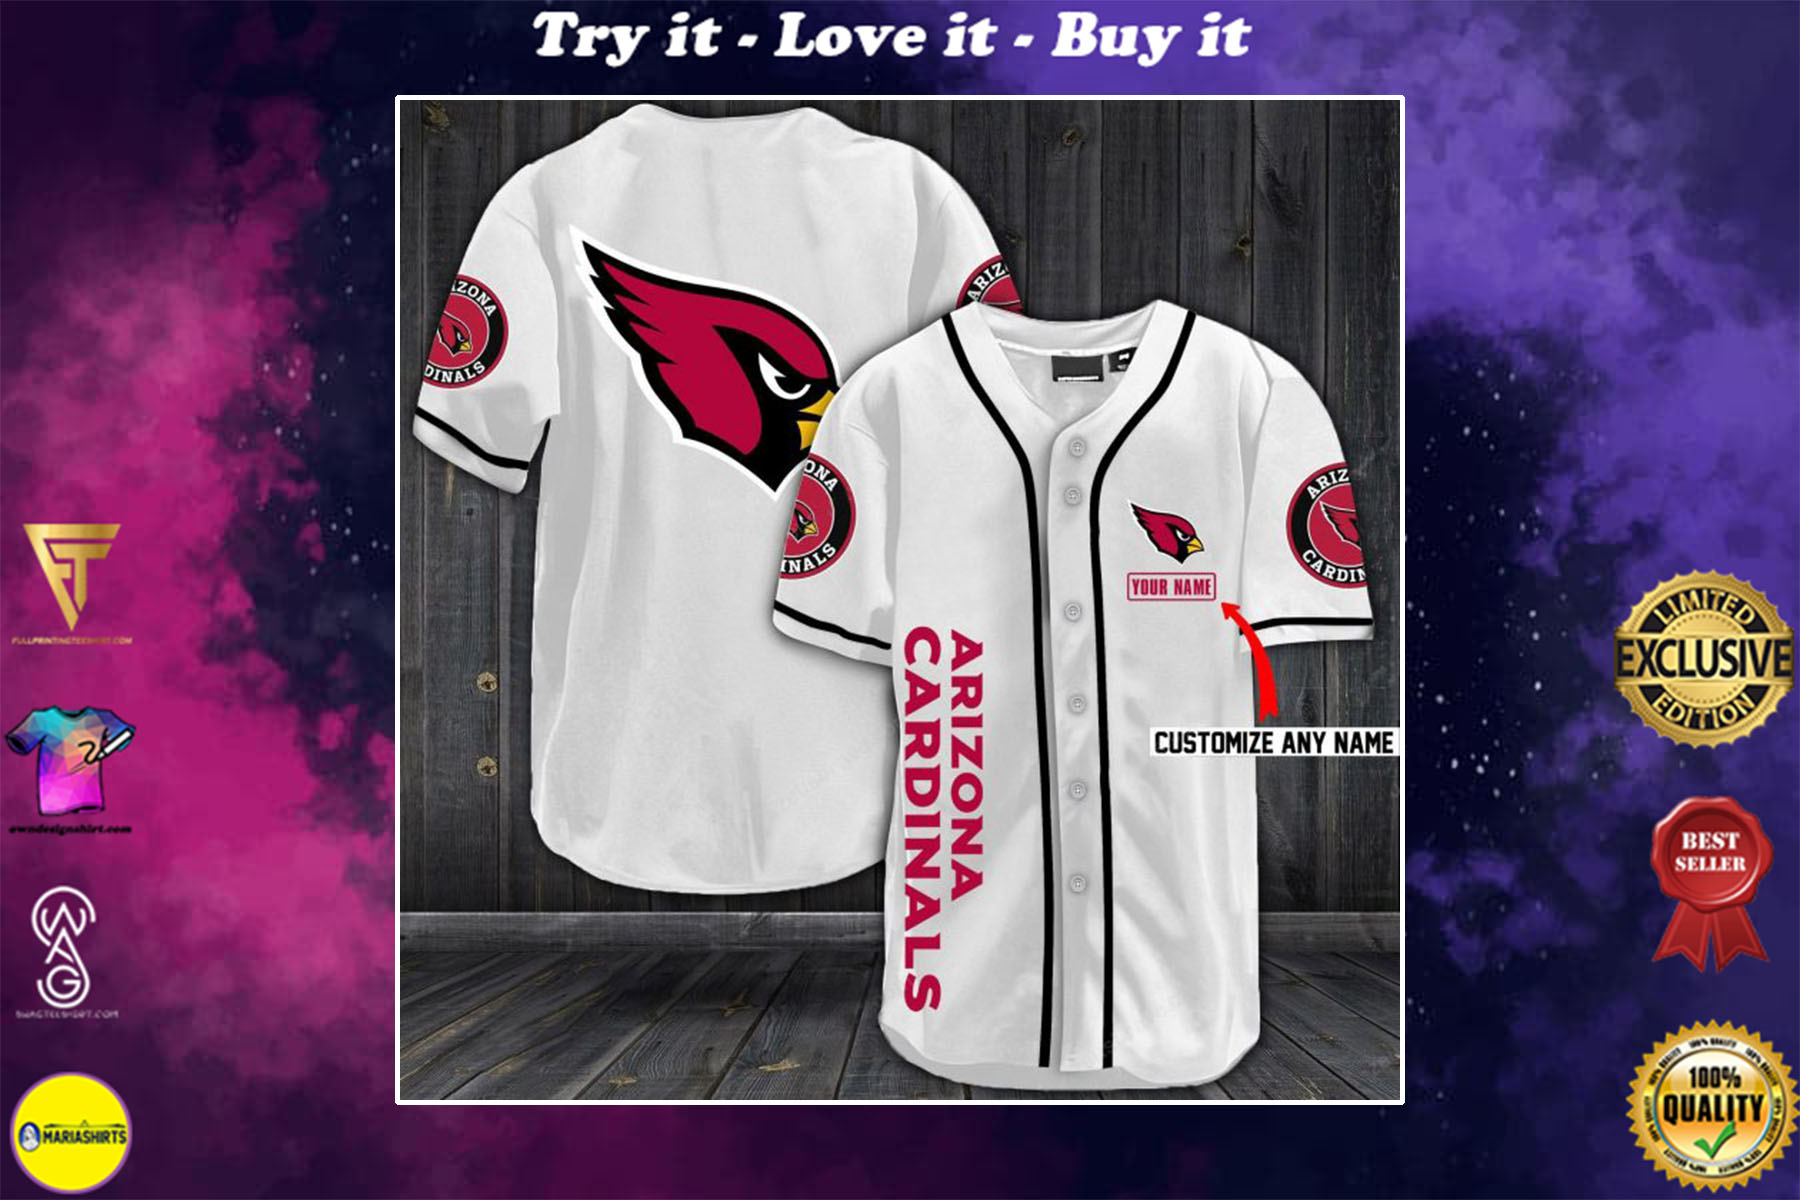 personalized arizona cardinals jersey